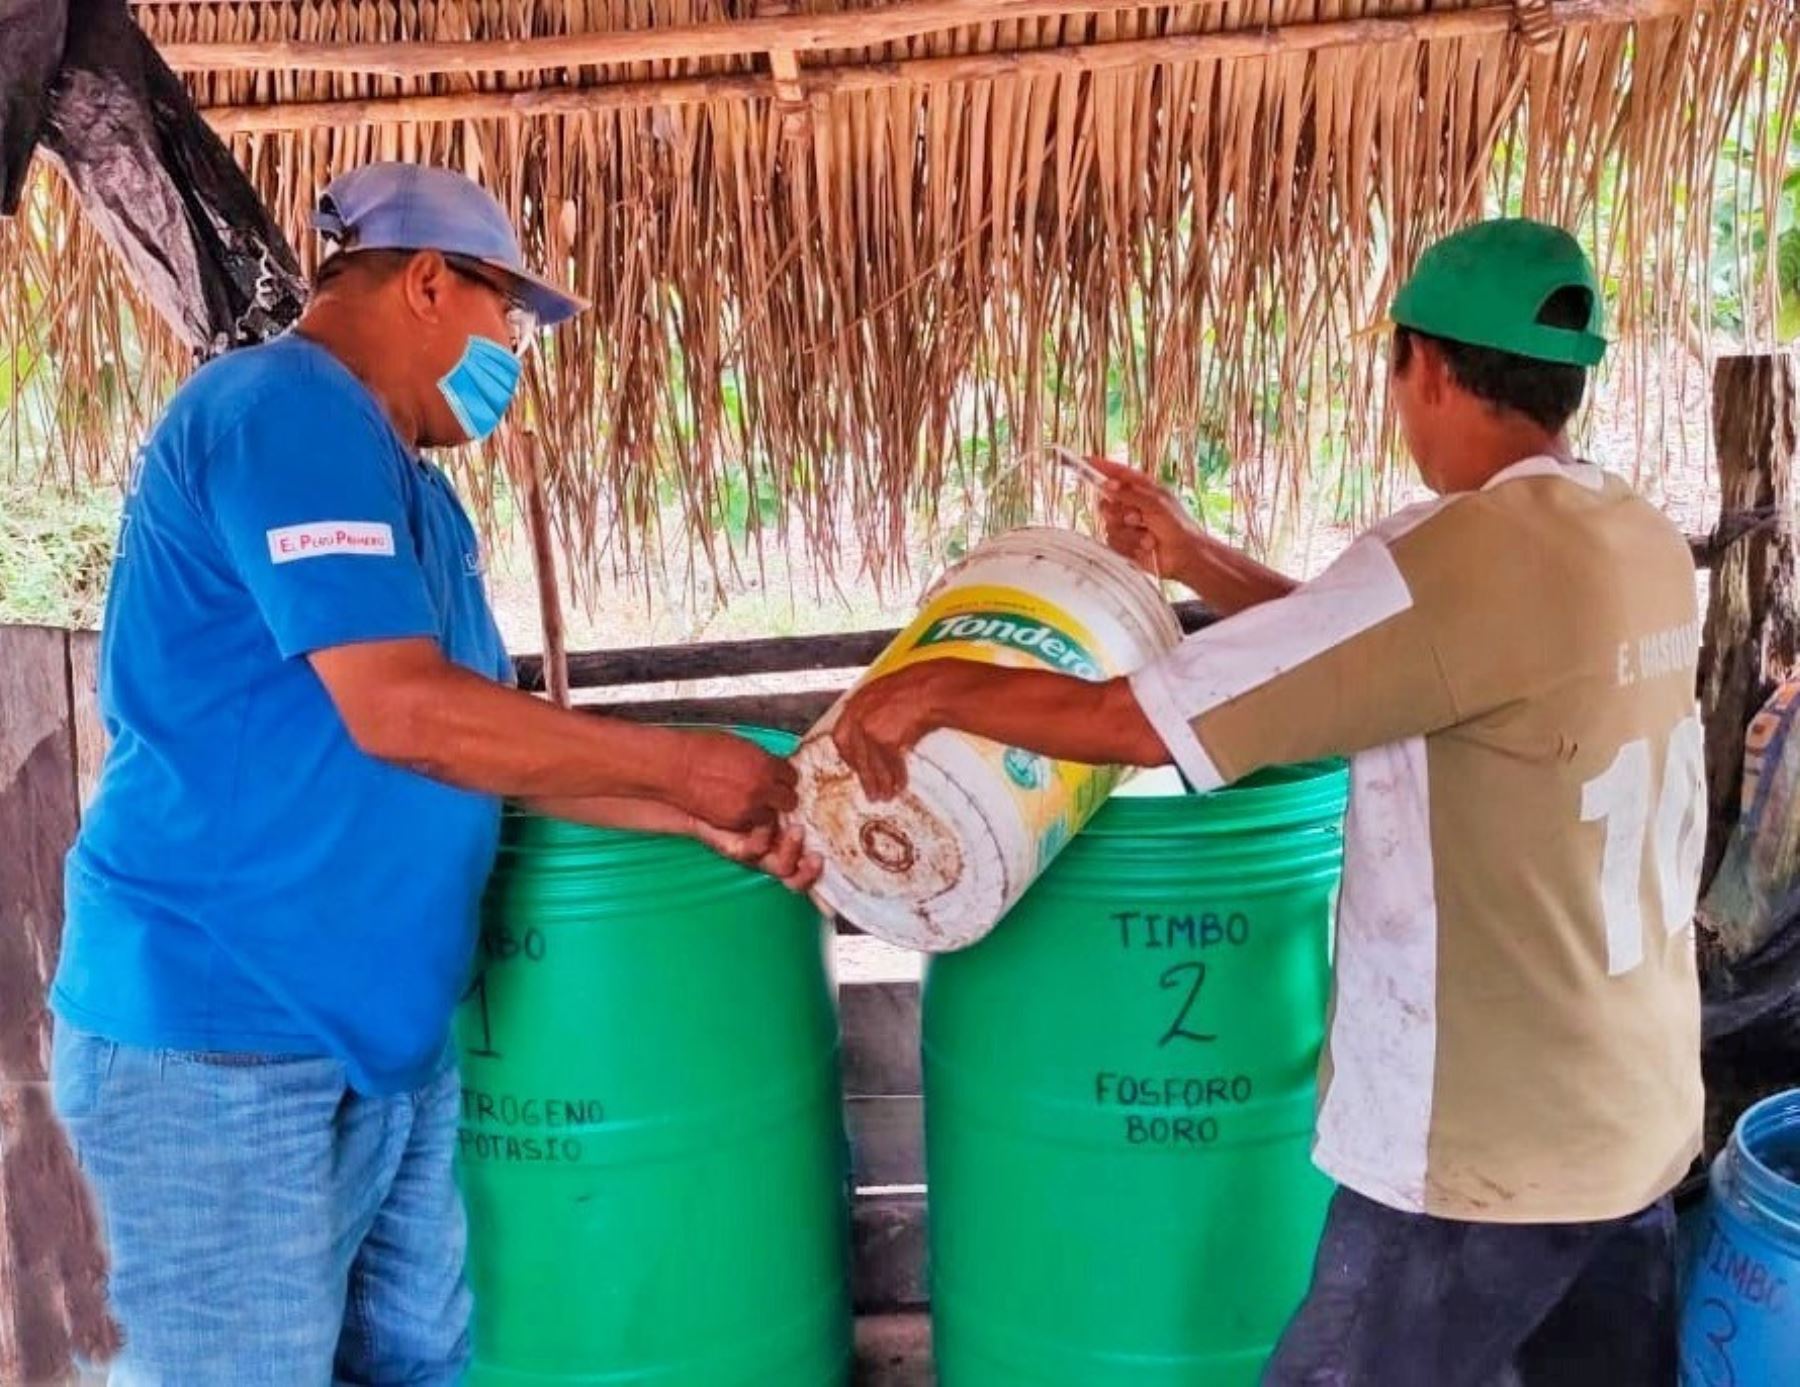 Comunidades indígenas de la región San Martín reciben 37,000 litros de biofertilizante orgánico para mejorar la producción de cacao, informó Devida. ANDINA/Difusión